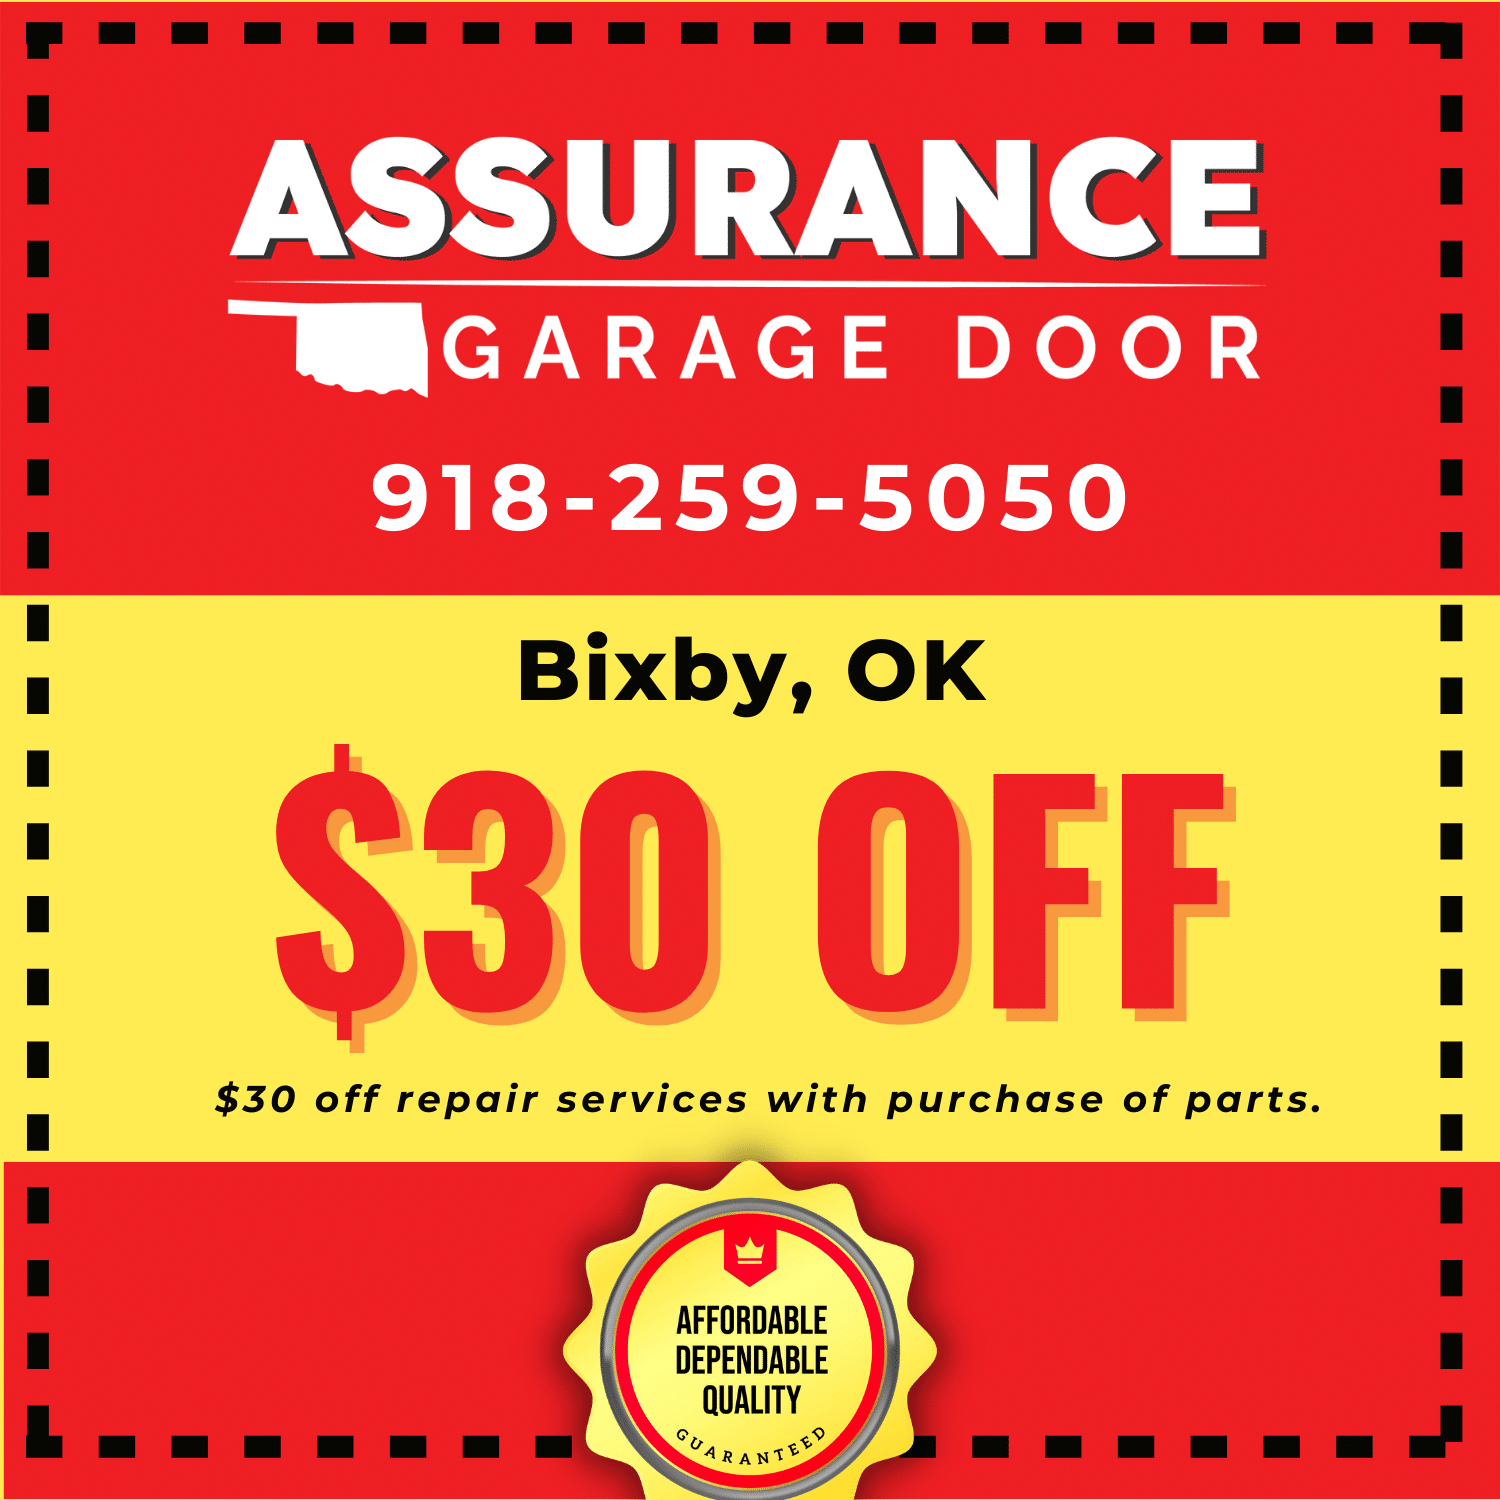 Location Coupon - Bixby - Assurance Garage Door Coupon